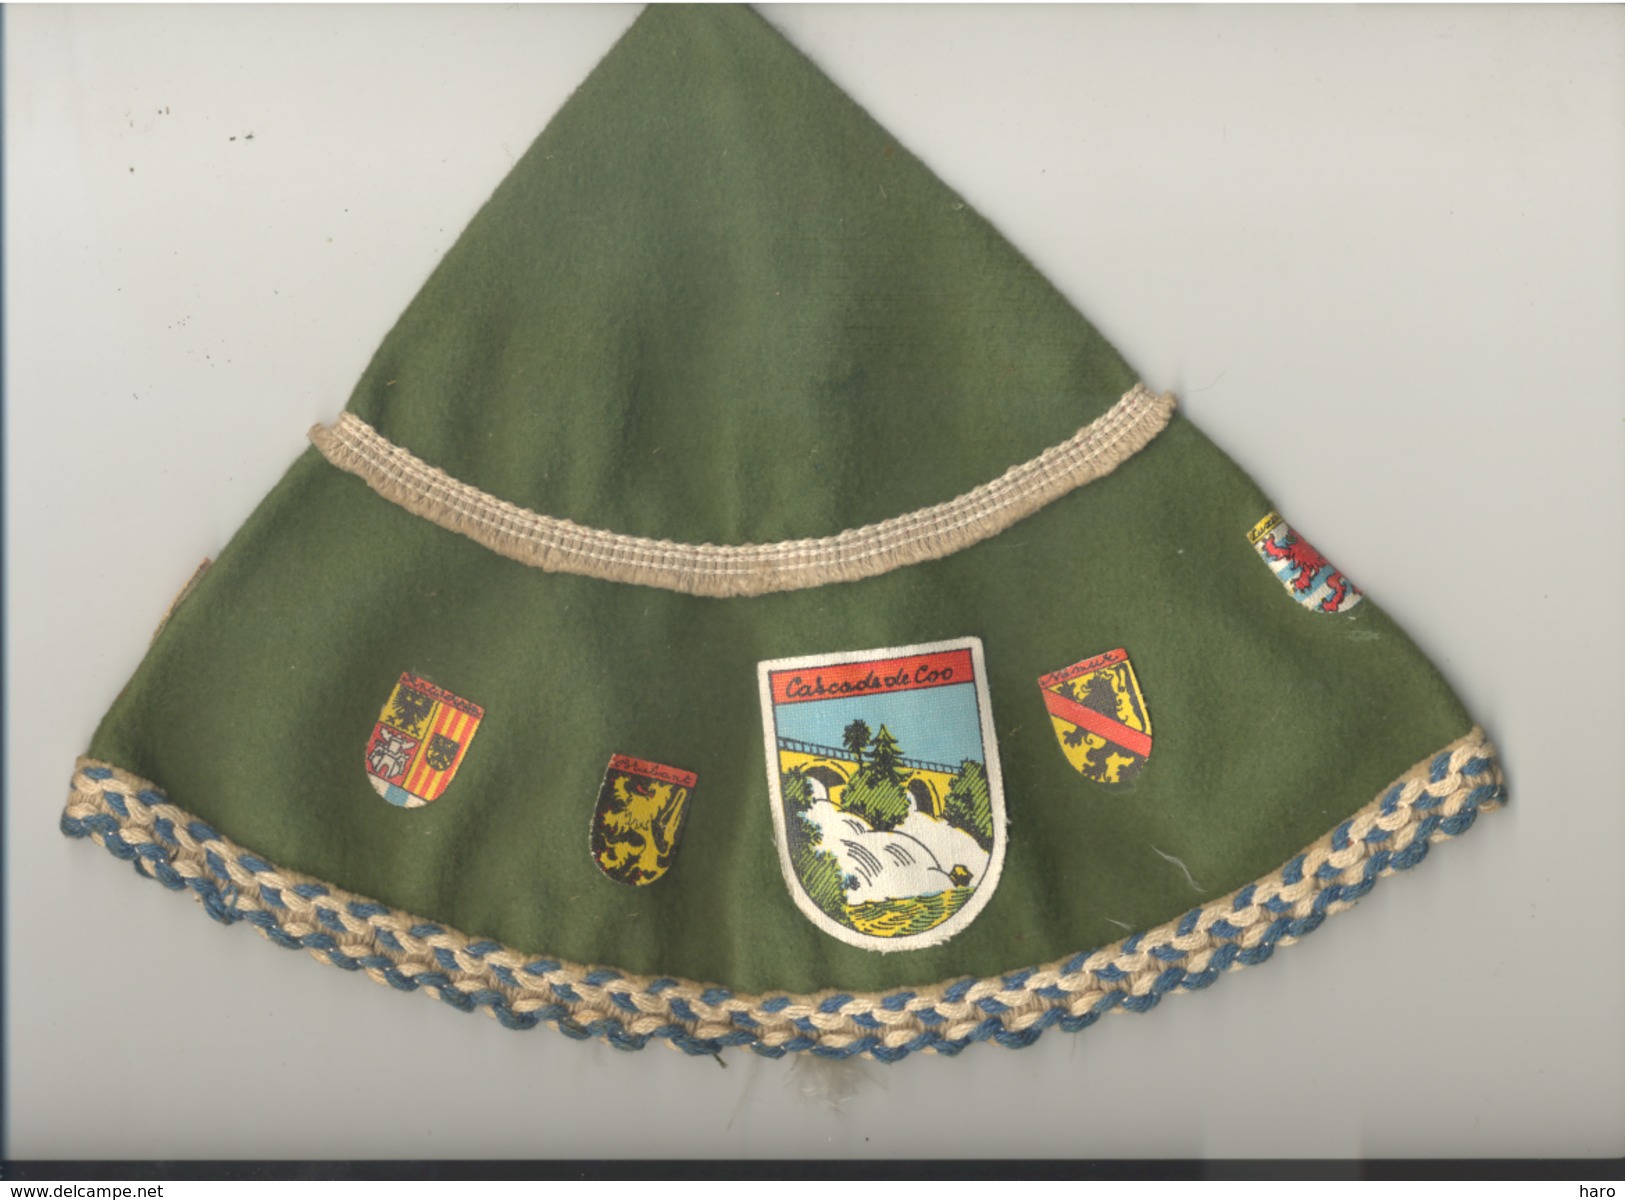 Bonnet Souvenir De La Cascade De Coo En Feutrine Avec Les Blasons Des 9 Provinces Belges - Caps